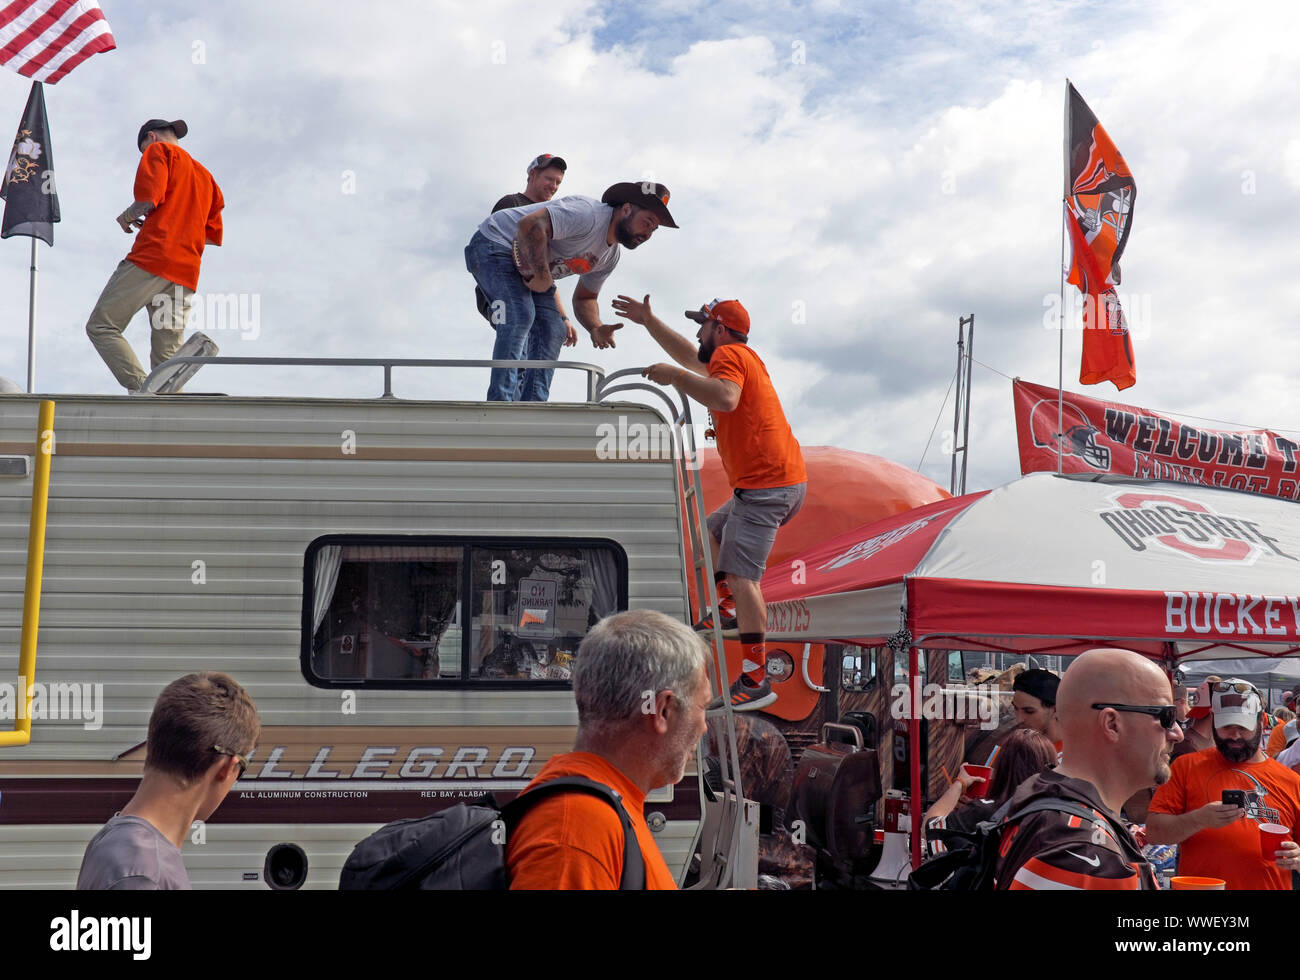 Un gruppo Di Tifosi dei Cleveland Browns sale su un camper durante le feste di coda nel lotto Muni di Cleveland, Ohio, USA prima di una partita a casa. Foto Stock